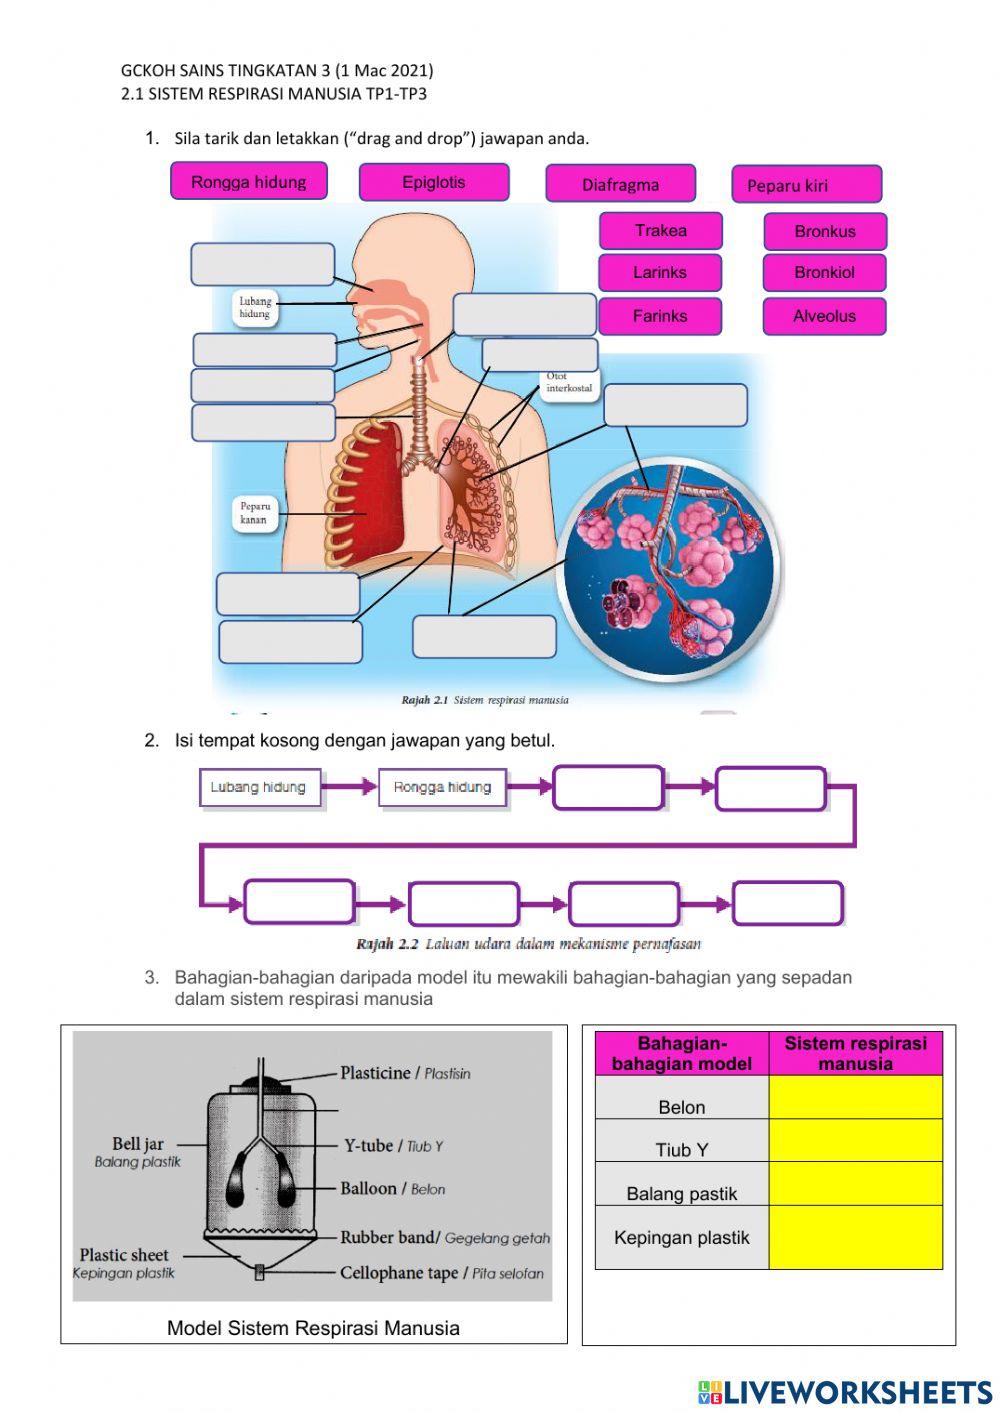 2.1 Sistem Respirasi Manusia